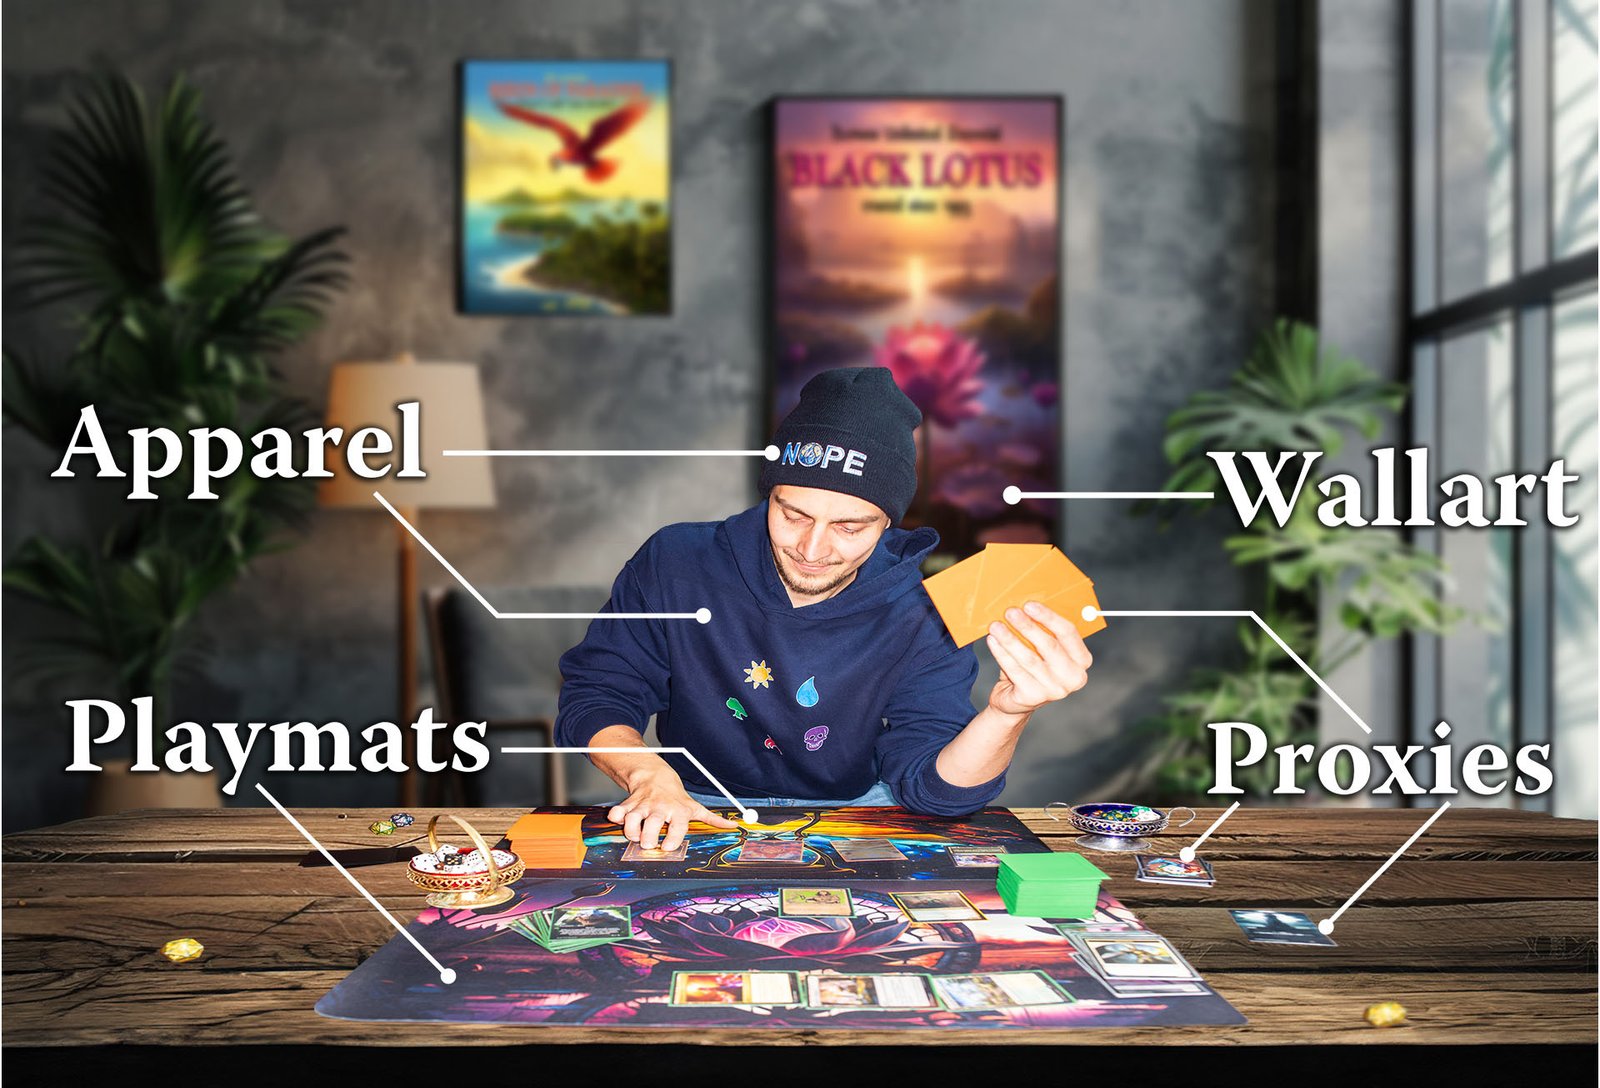 Branding-Foto einer Spielefirma, das verschiedene Produkte wie Apparel, Playmats, Proxies und Wallart zeigt.